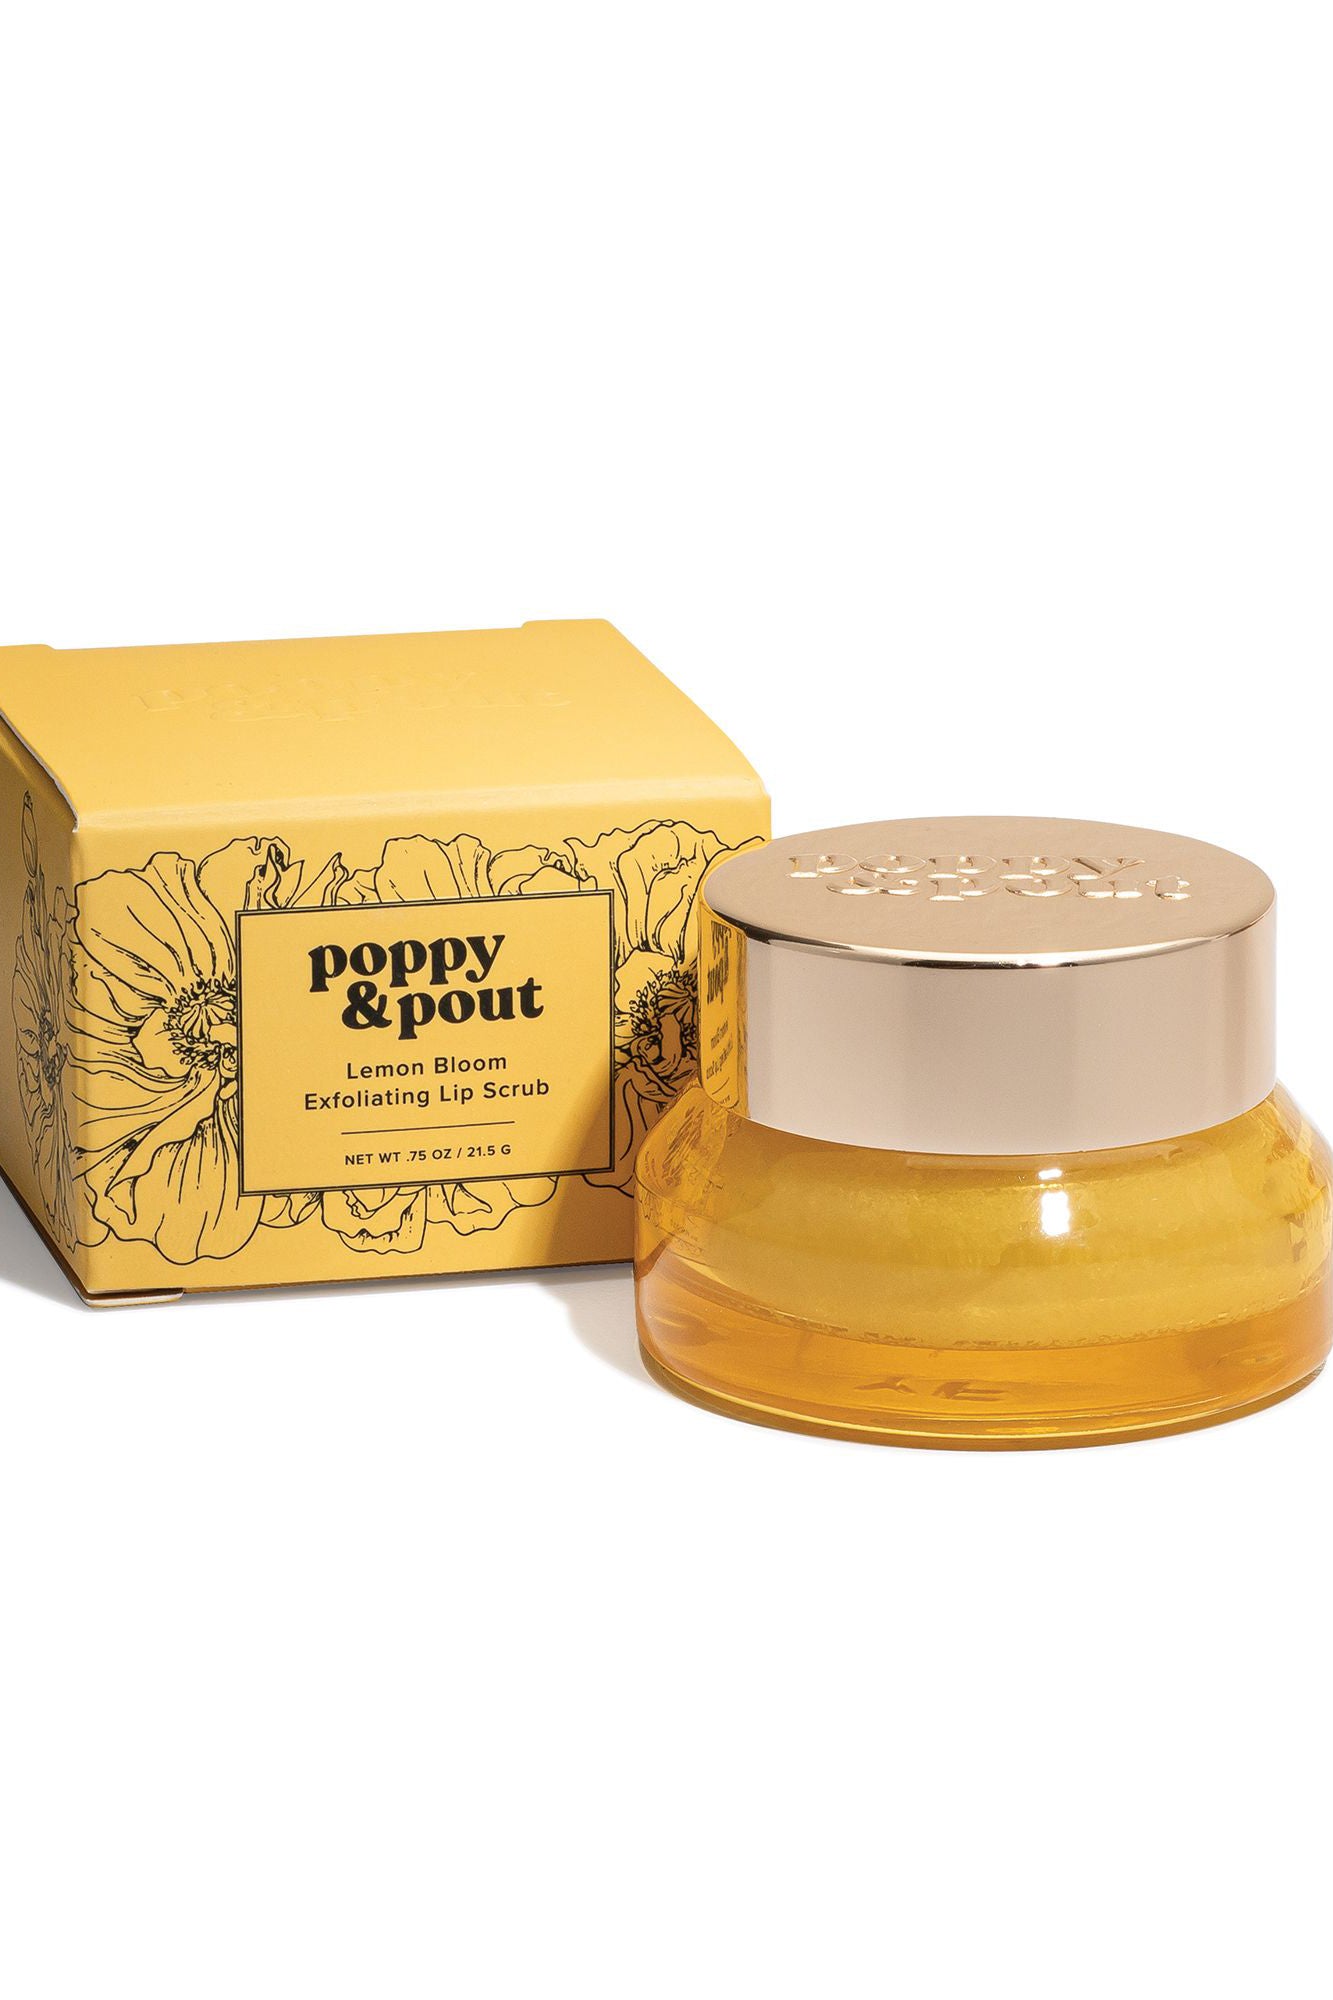 Poppy & Pout Lip Scrub / Lemon Bloom